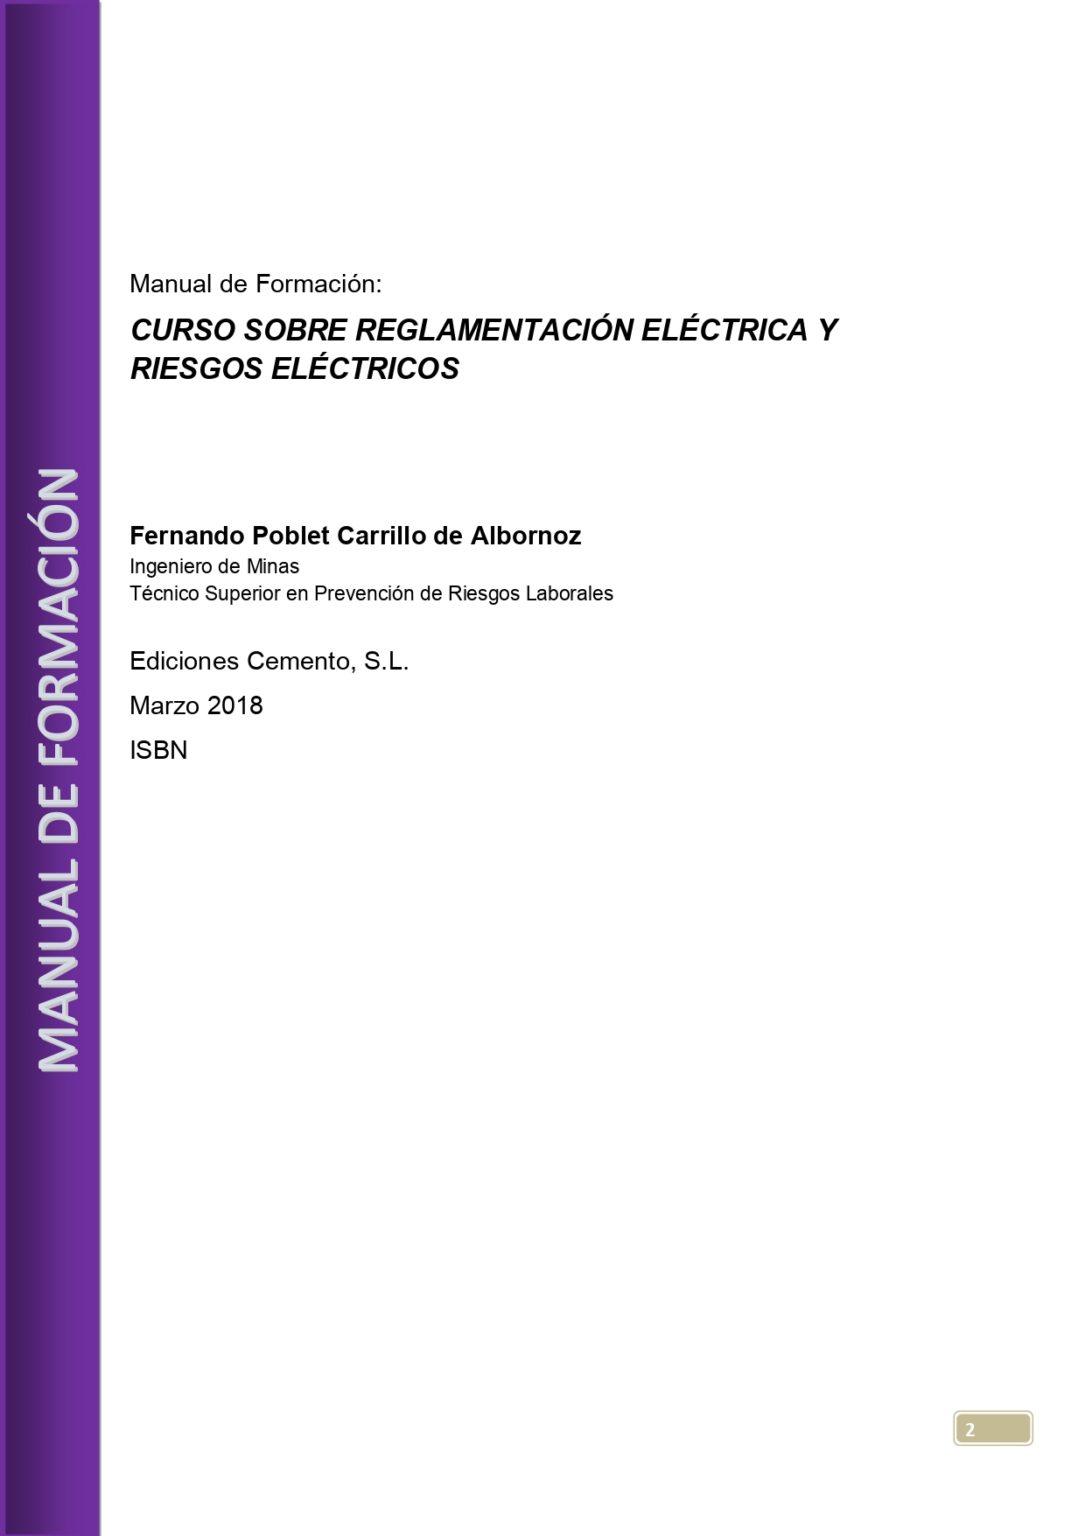 CURSO-SOBRE-REGLAMENTACION-ELECTRICA-Y-RIESGOS-ELECTRICOS_page-0002